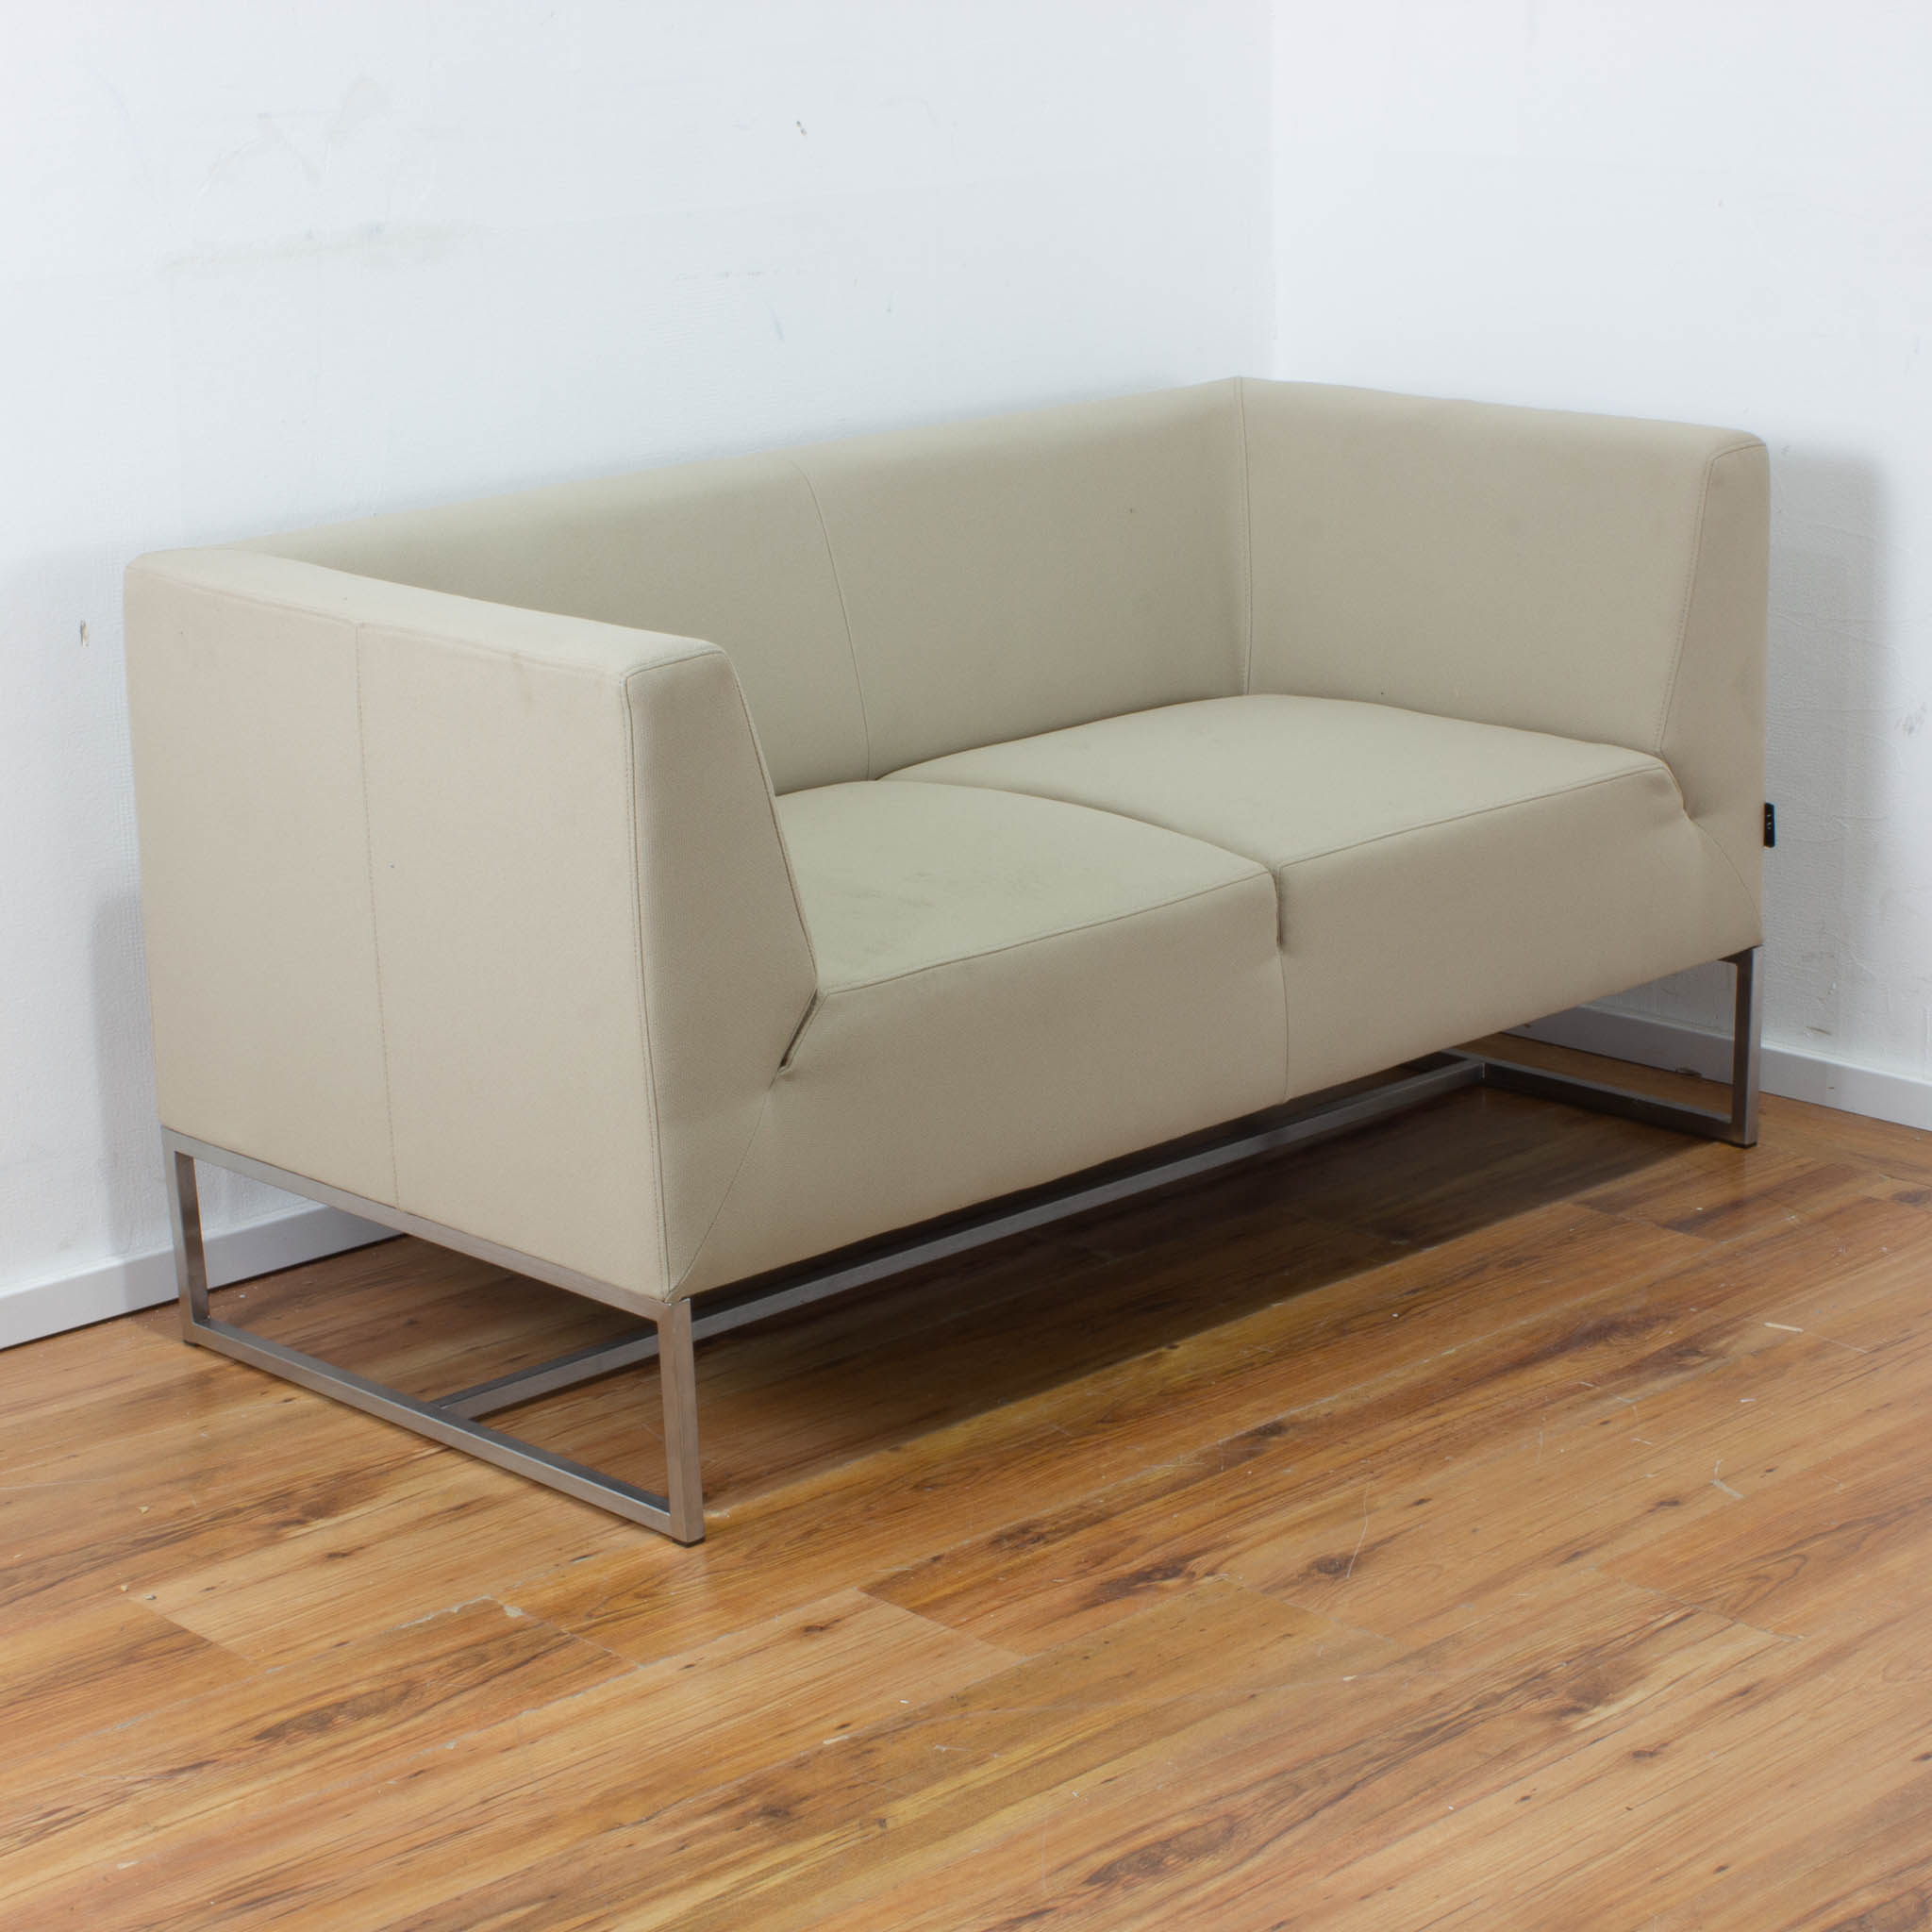 SMV 2-Sitzer Sofa - Stoff-Bezug beige mit Edelstahlgestell